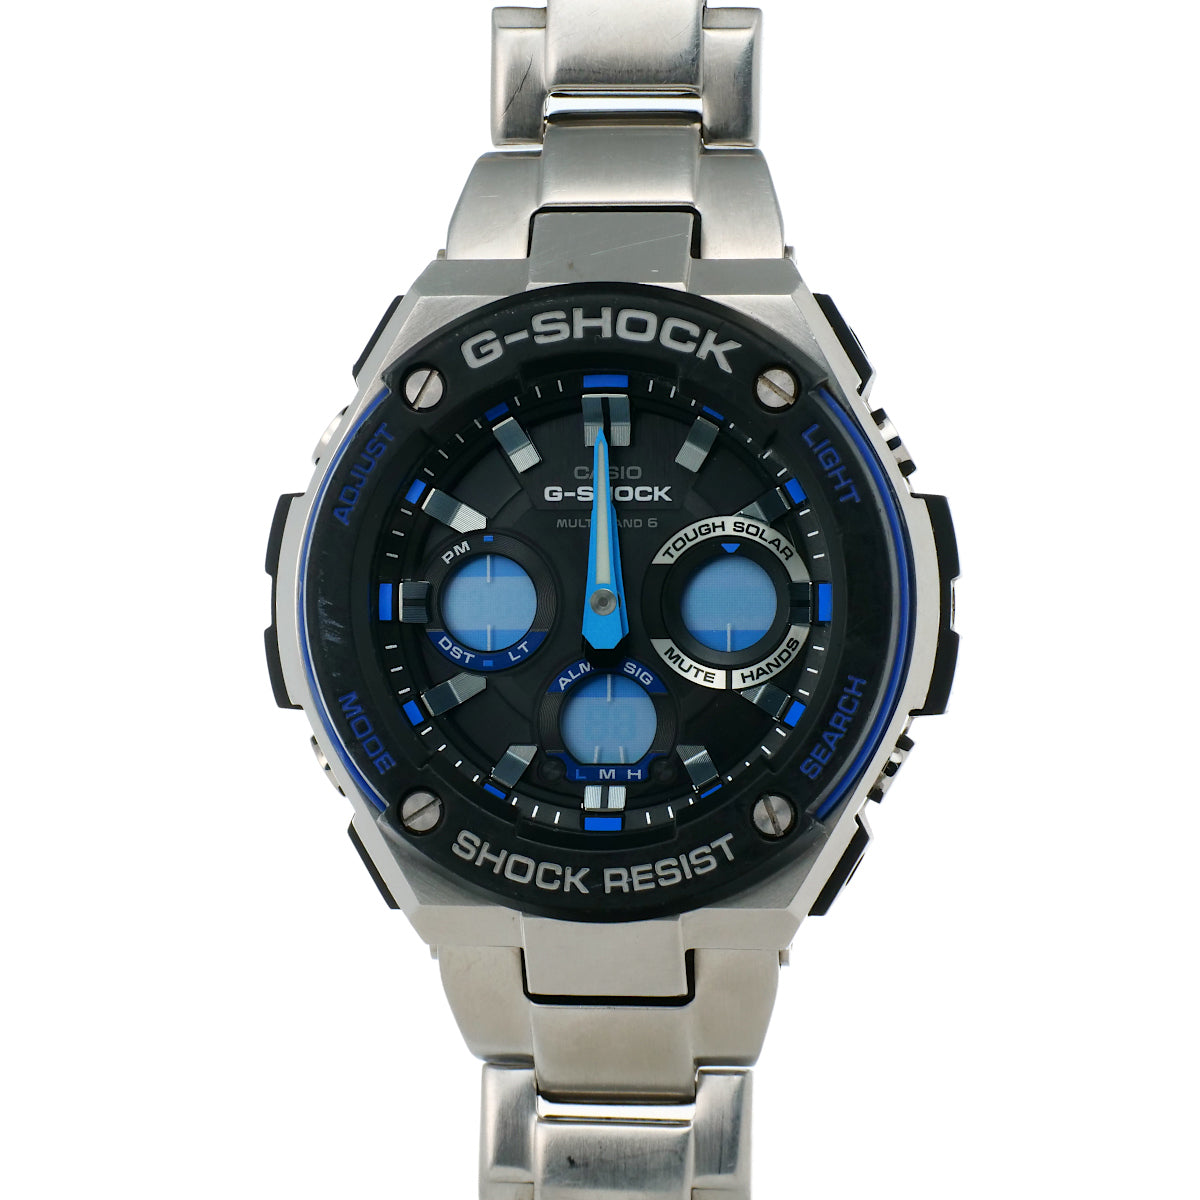 Casio G-Shock Men's Watch in Stainless Steel GST-W100D